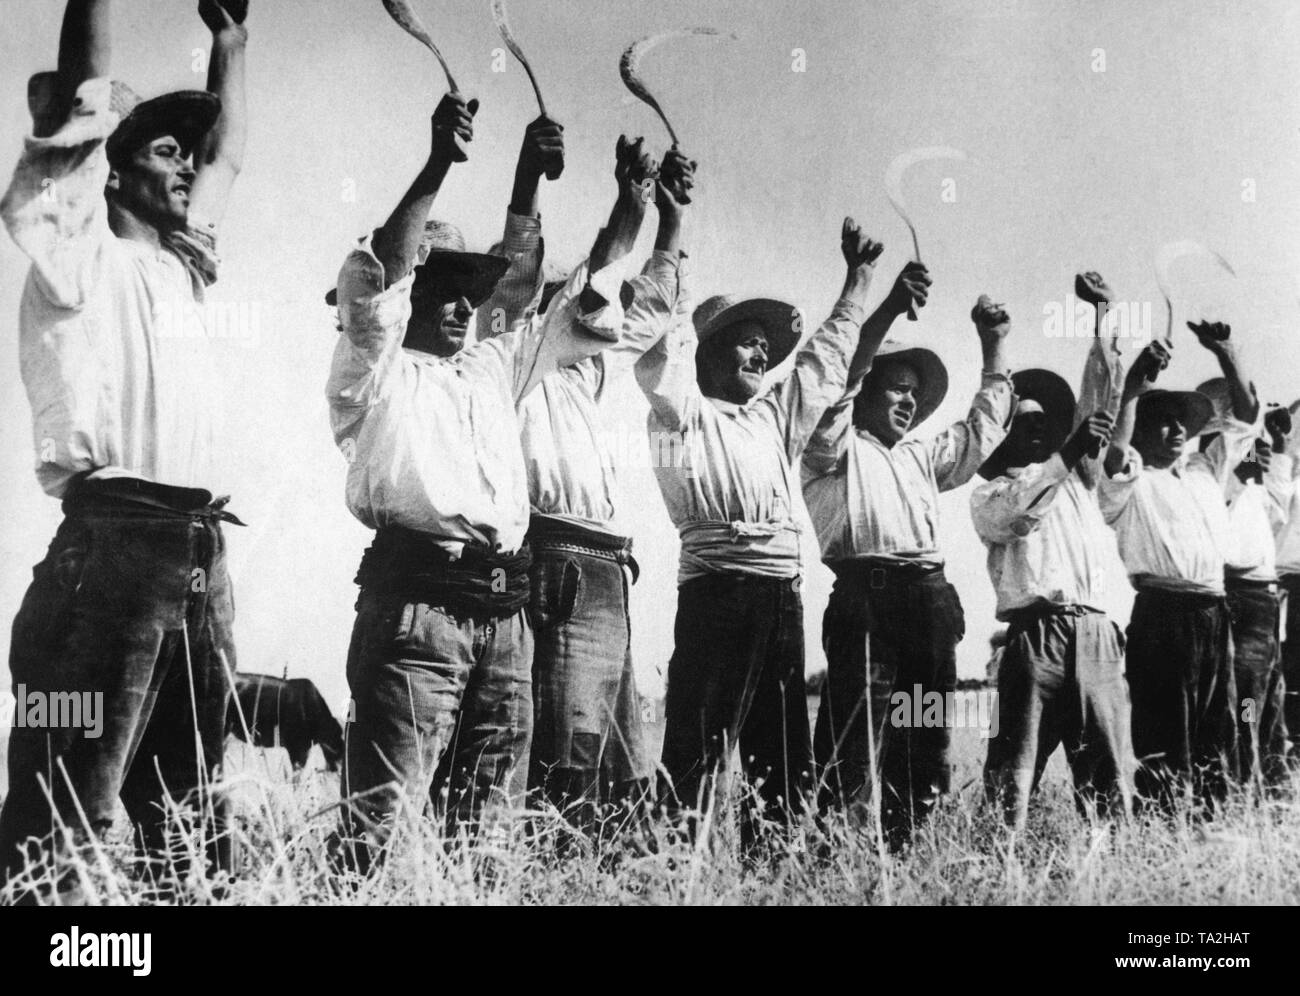 Foto von einer Gruppe von andalusischen Landwirte, die die Kommunisten während des Bürgerkriegs verbunden. Die Landwirte tragen weiße Blusen, Hosen, Strohhüte, und halten Sie die sicheln in der Luft, die ein Symbol der Kommunisten. Stockfoto